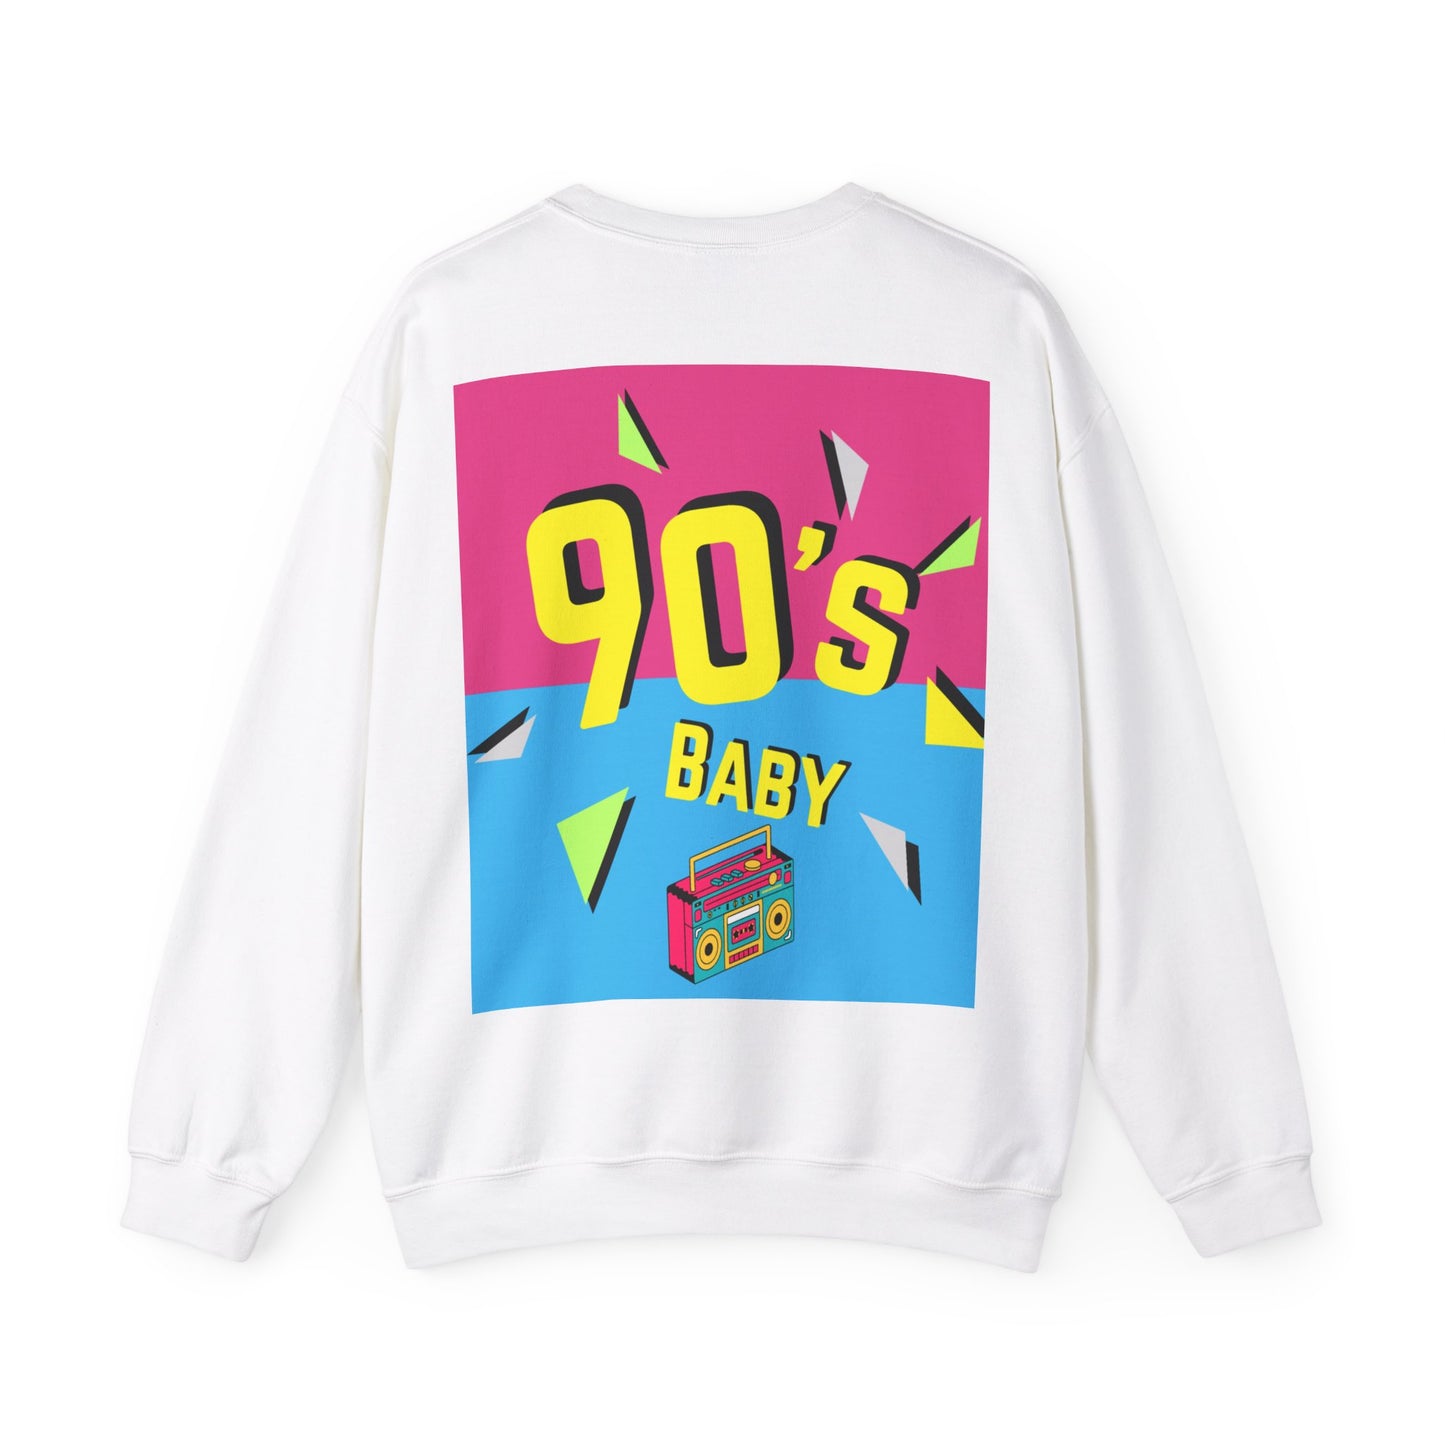 Y2k 90's Baby Crewneck Sweatshirt